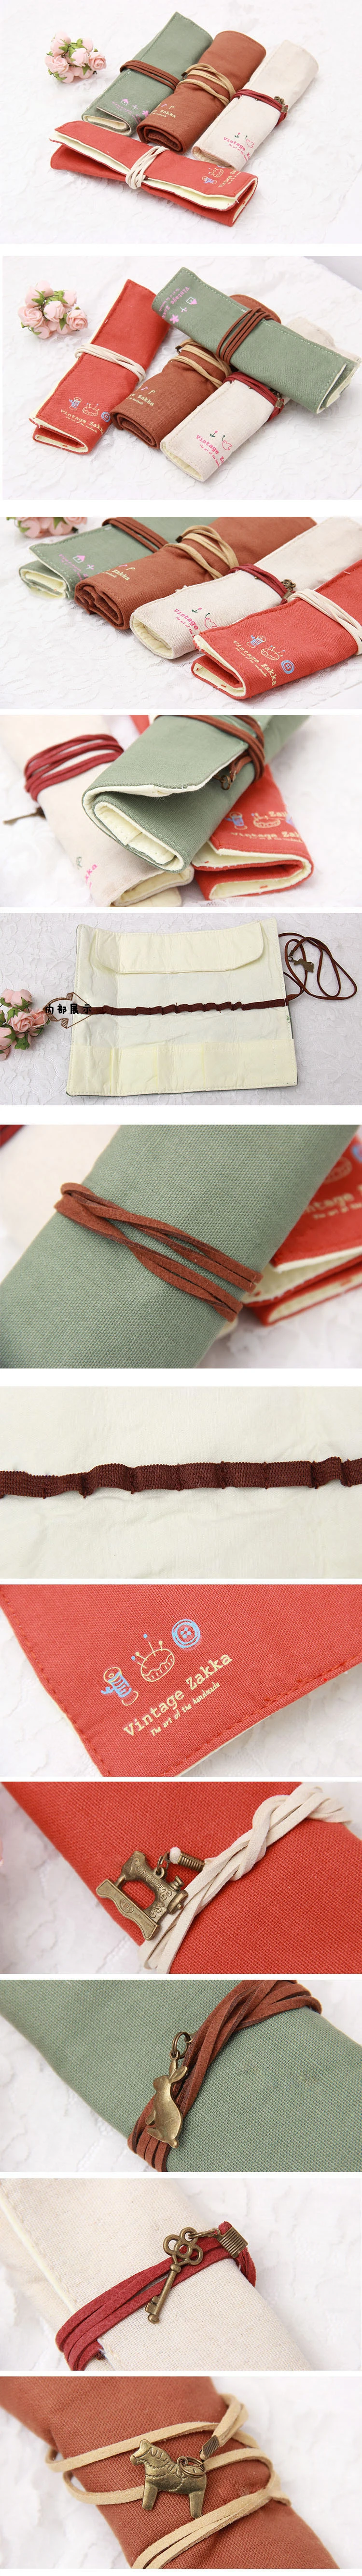 韓國復古卷卷 帆布筆袋 筆簾 創意簡約文具袋opp